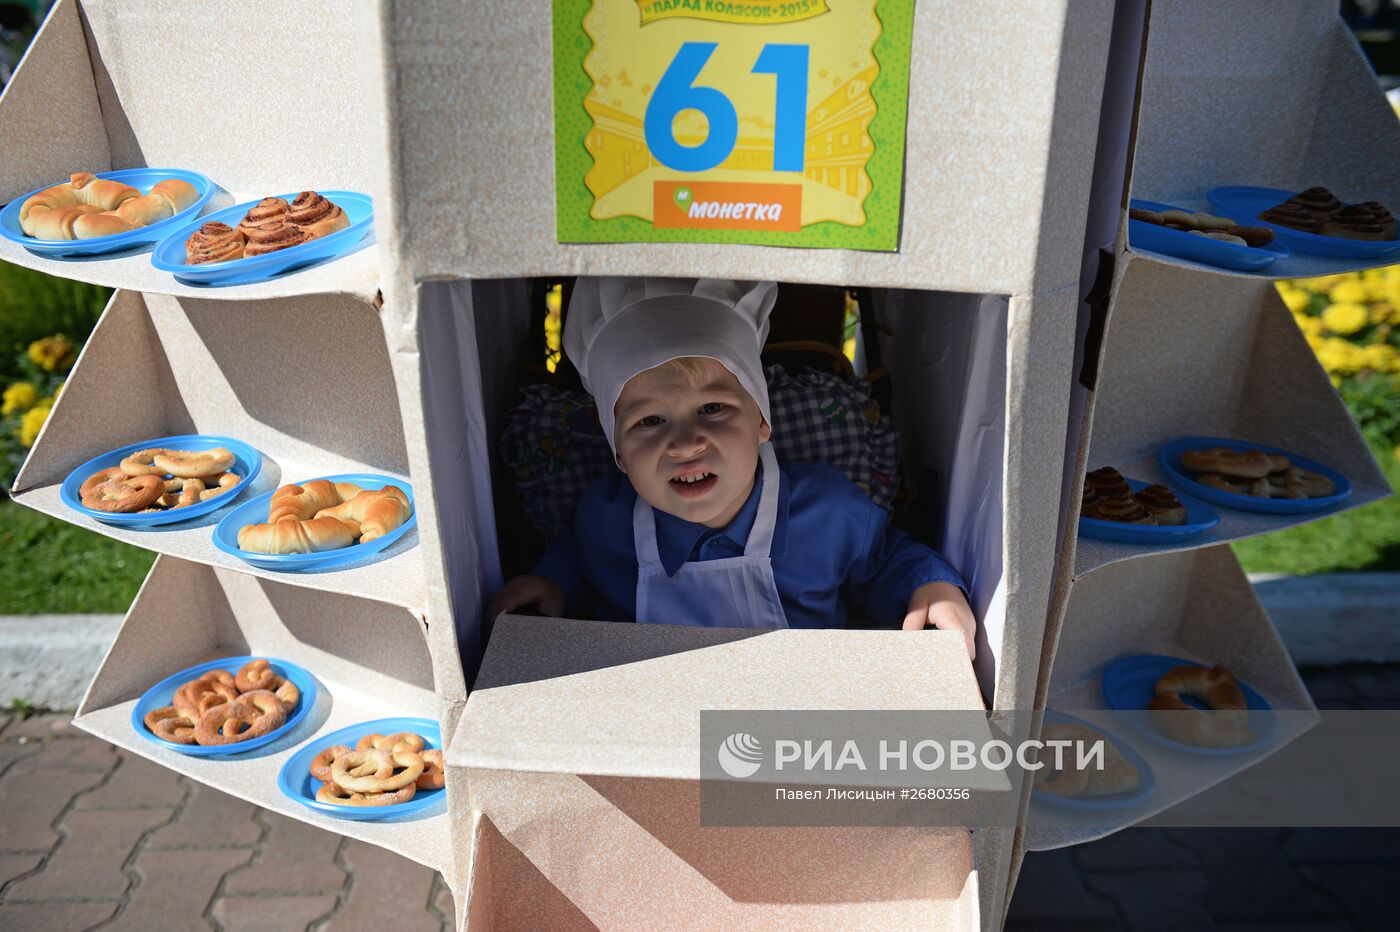 Парад детских колясок в Екатеринбурге